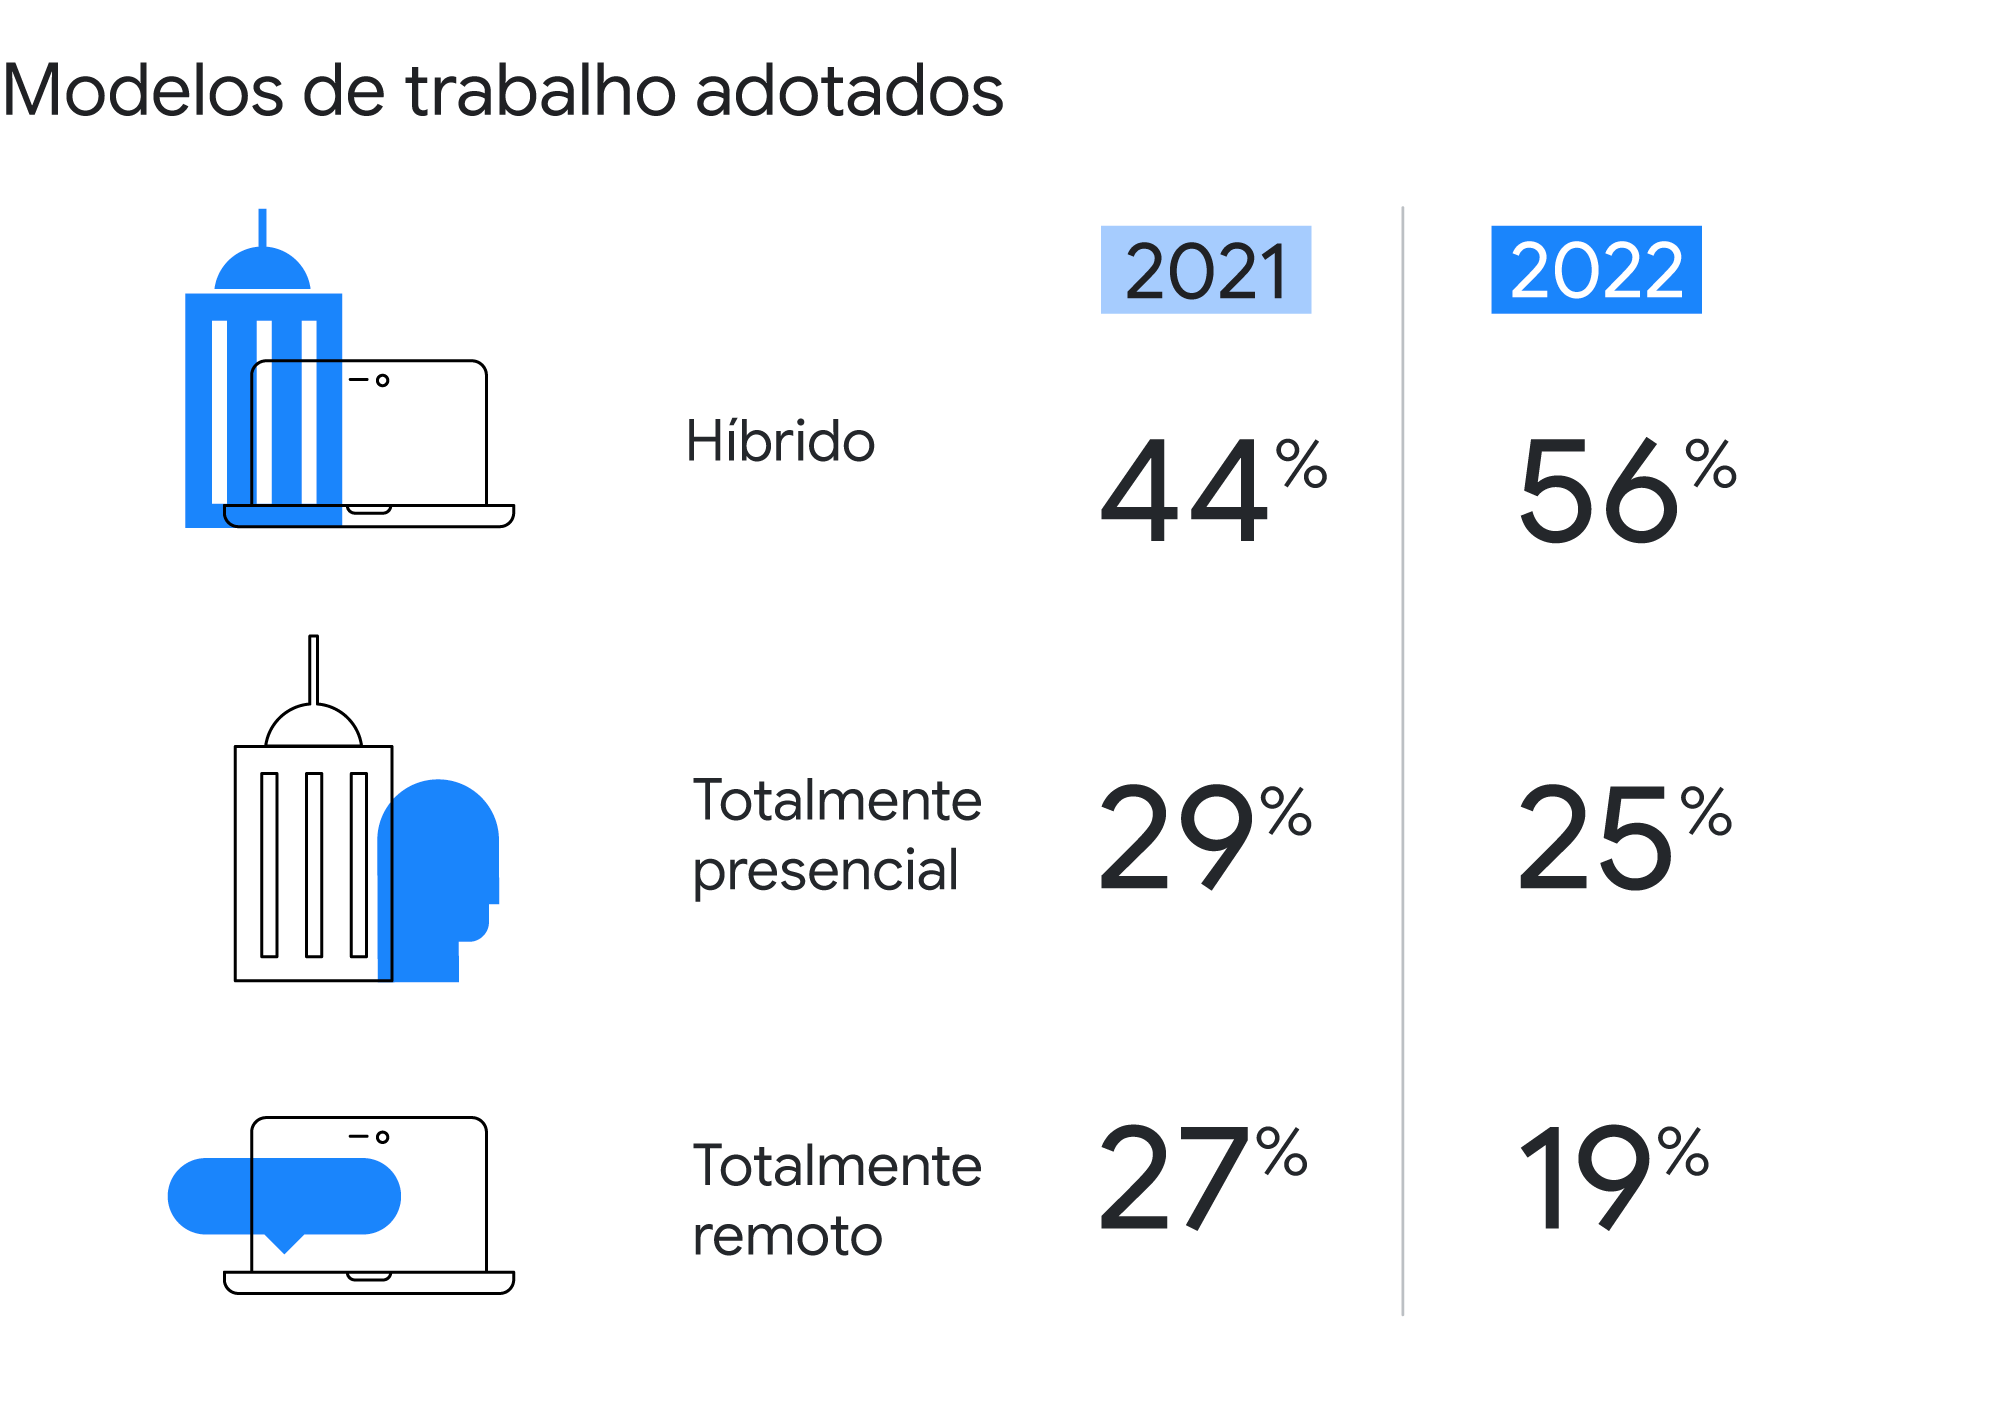 Modelos de trabalho adotados em 2021: 44% híbrido; 29% totalmente presencial; e 27% totalmente remoto. E em 2022: 56% híbrido; 25% totalmente presencial; e 19% totalmente remoto.